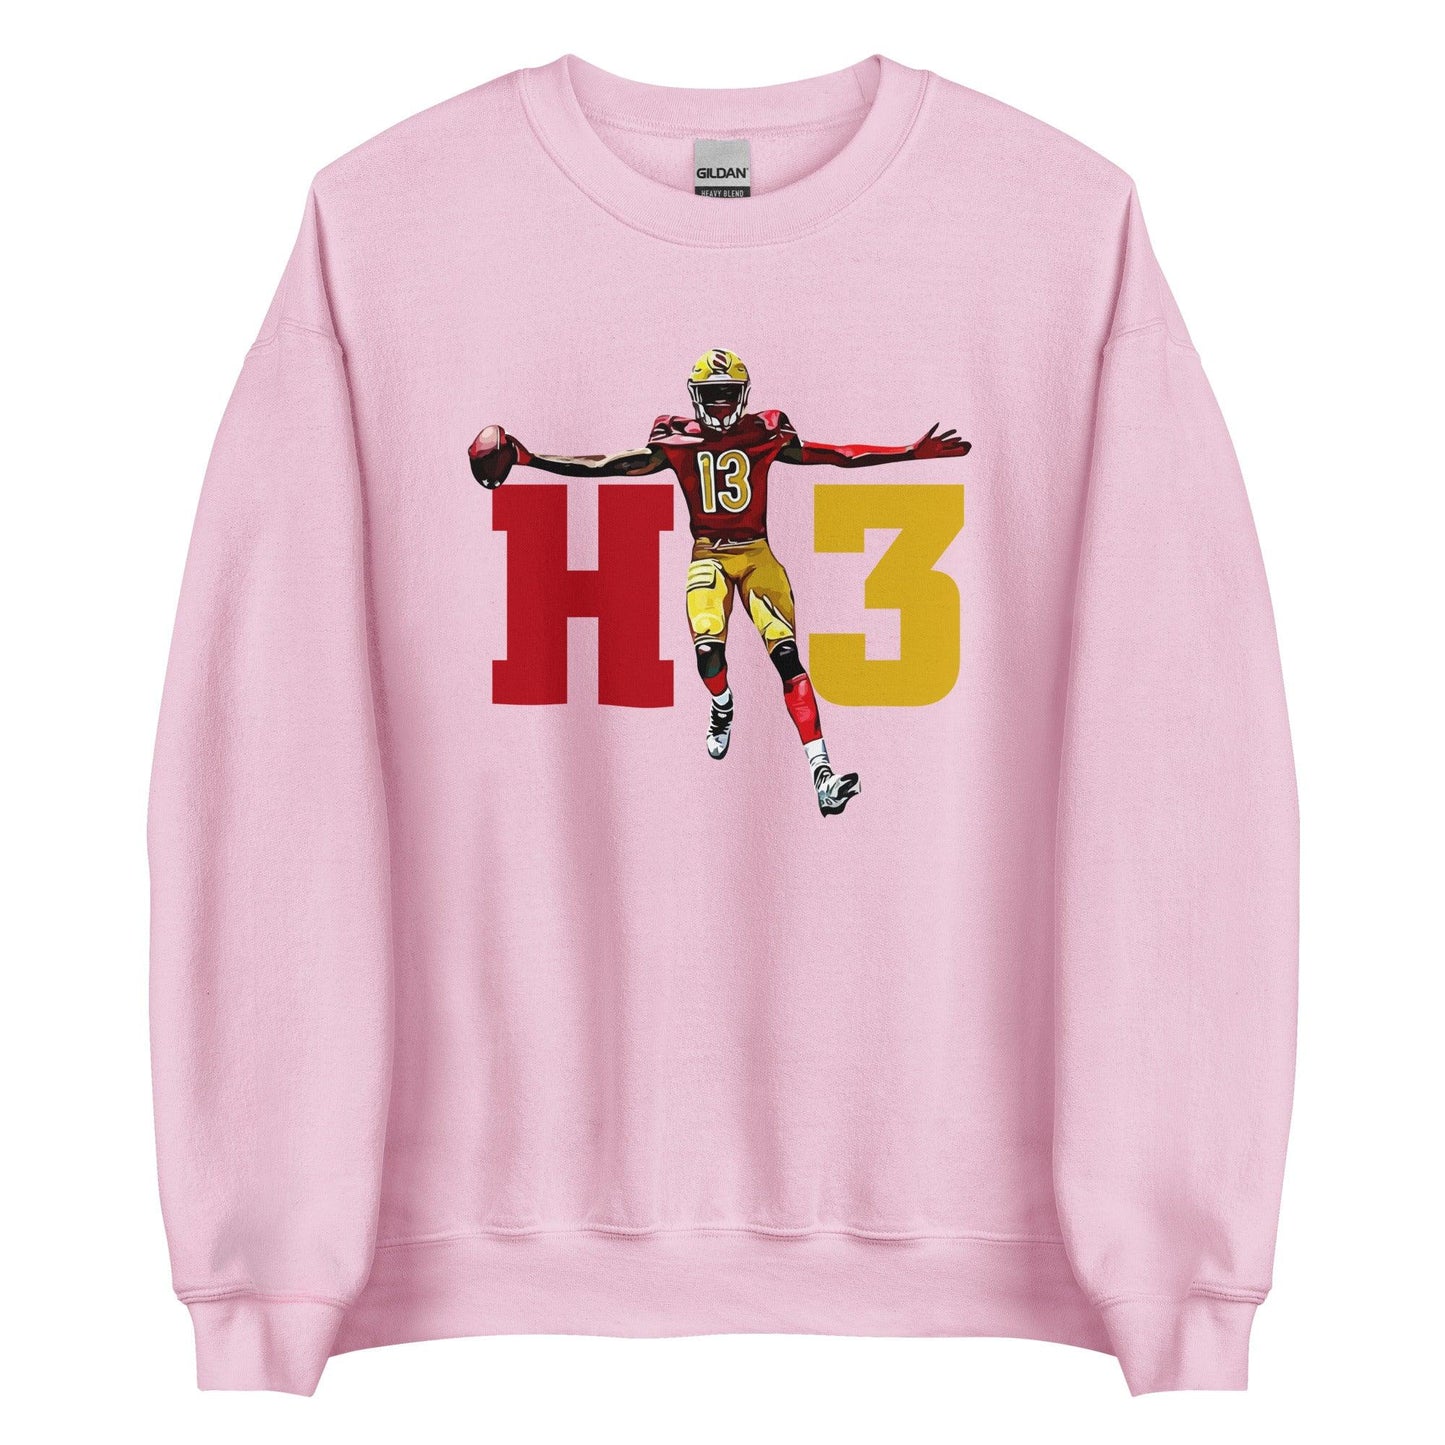 Maurice Alexander "HT3" Sweatshirt - Fan Arch